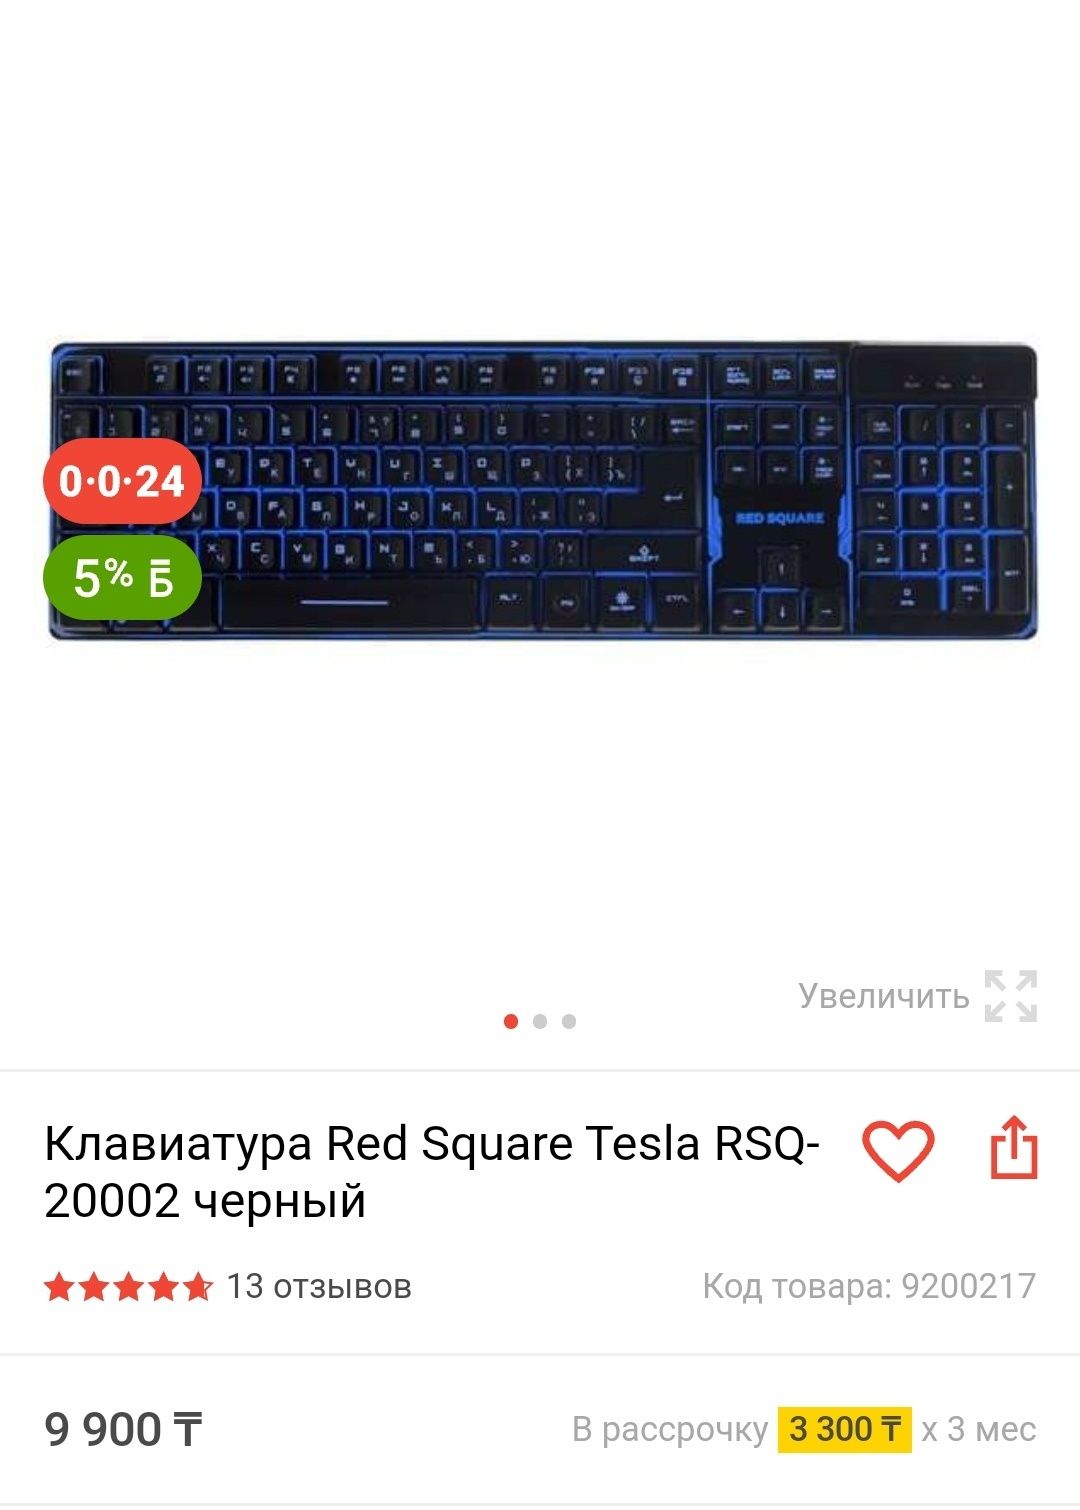 Продам клавиатуру Red Square